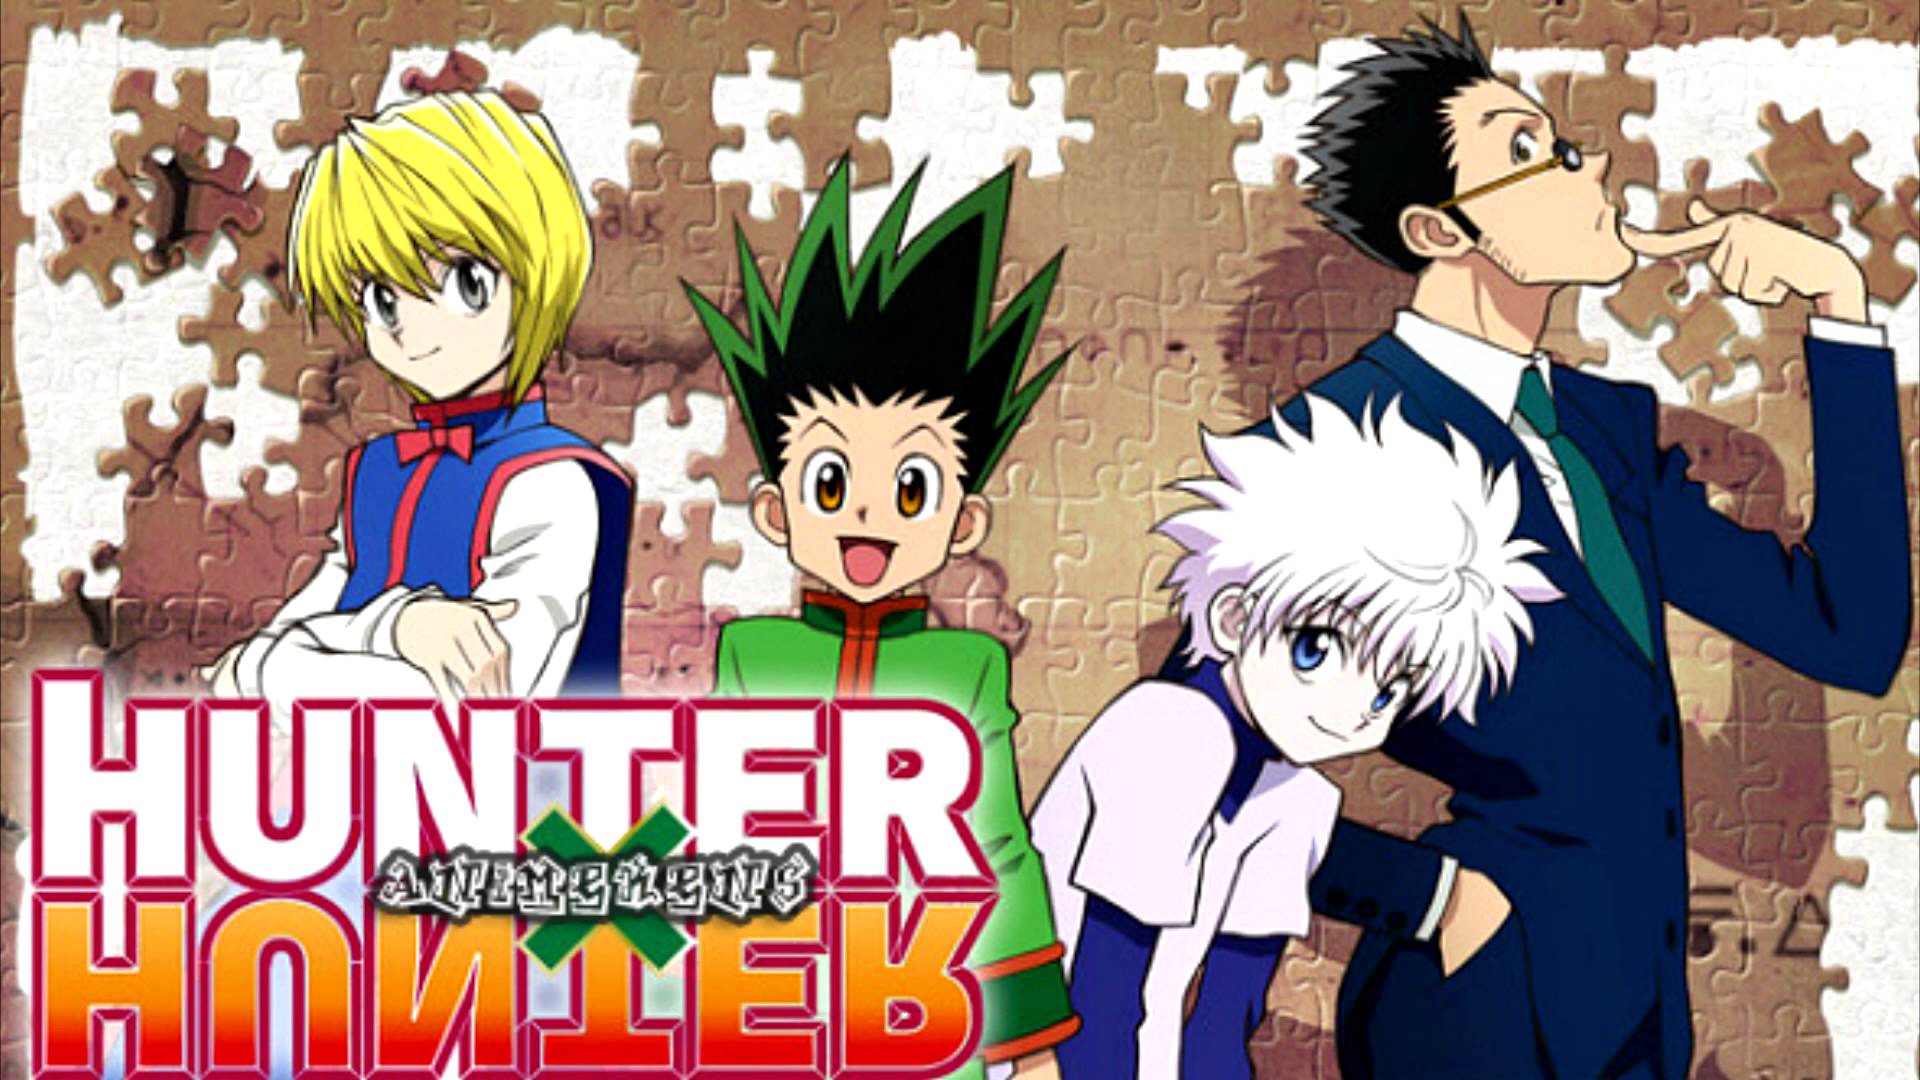 1920x1080 Hunter X Hunter hình nền, Hình ảnh Anime, HQ Hunter X Hunter.  Hình nền 4K 2019